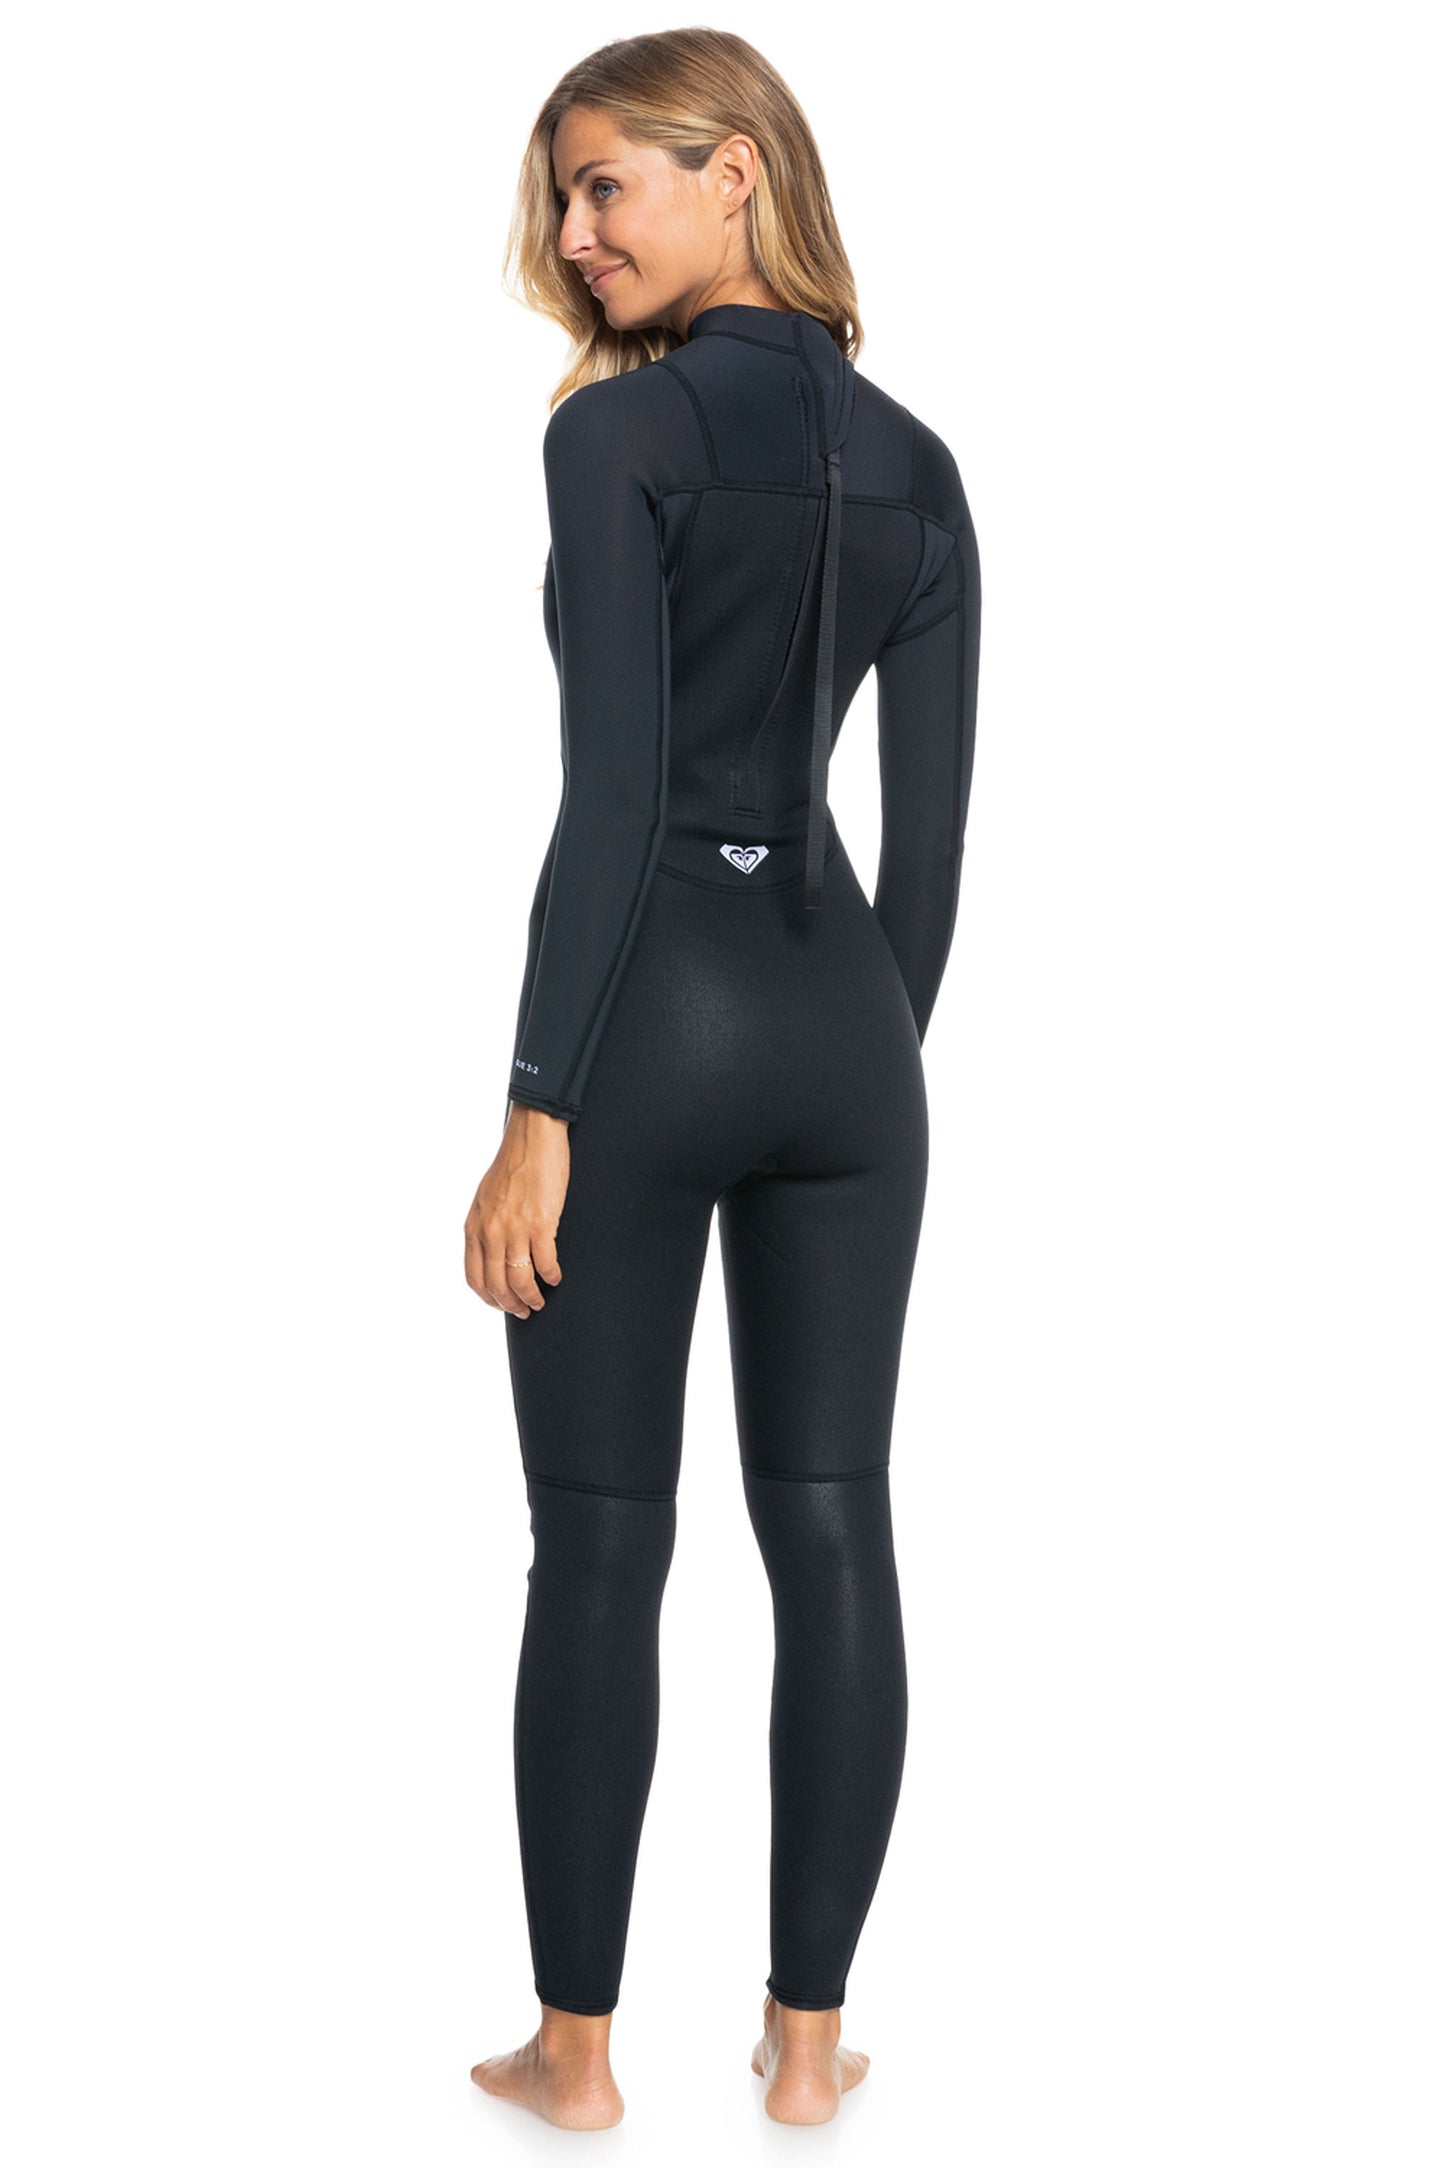 Pukas-Surf-Shop-Quicksilver-wetsuit-woman-prologue-black